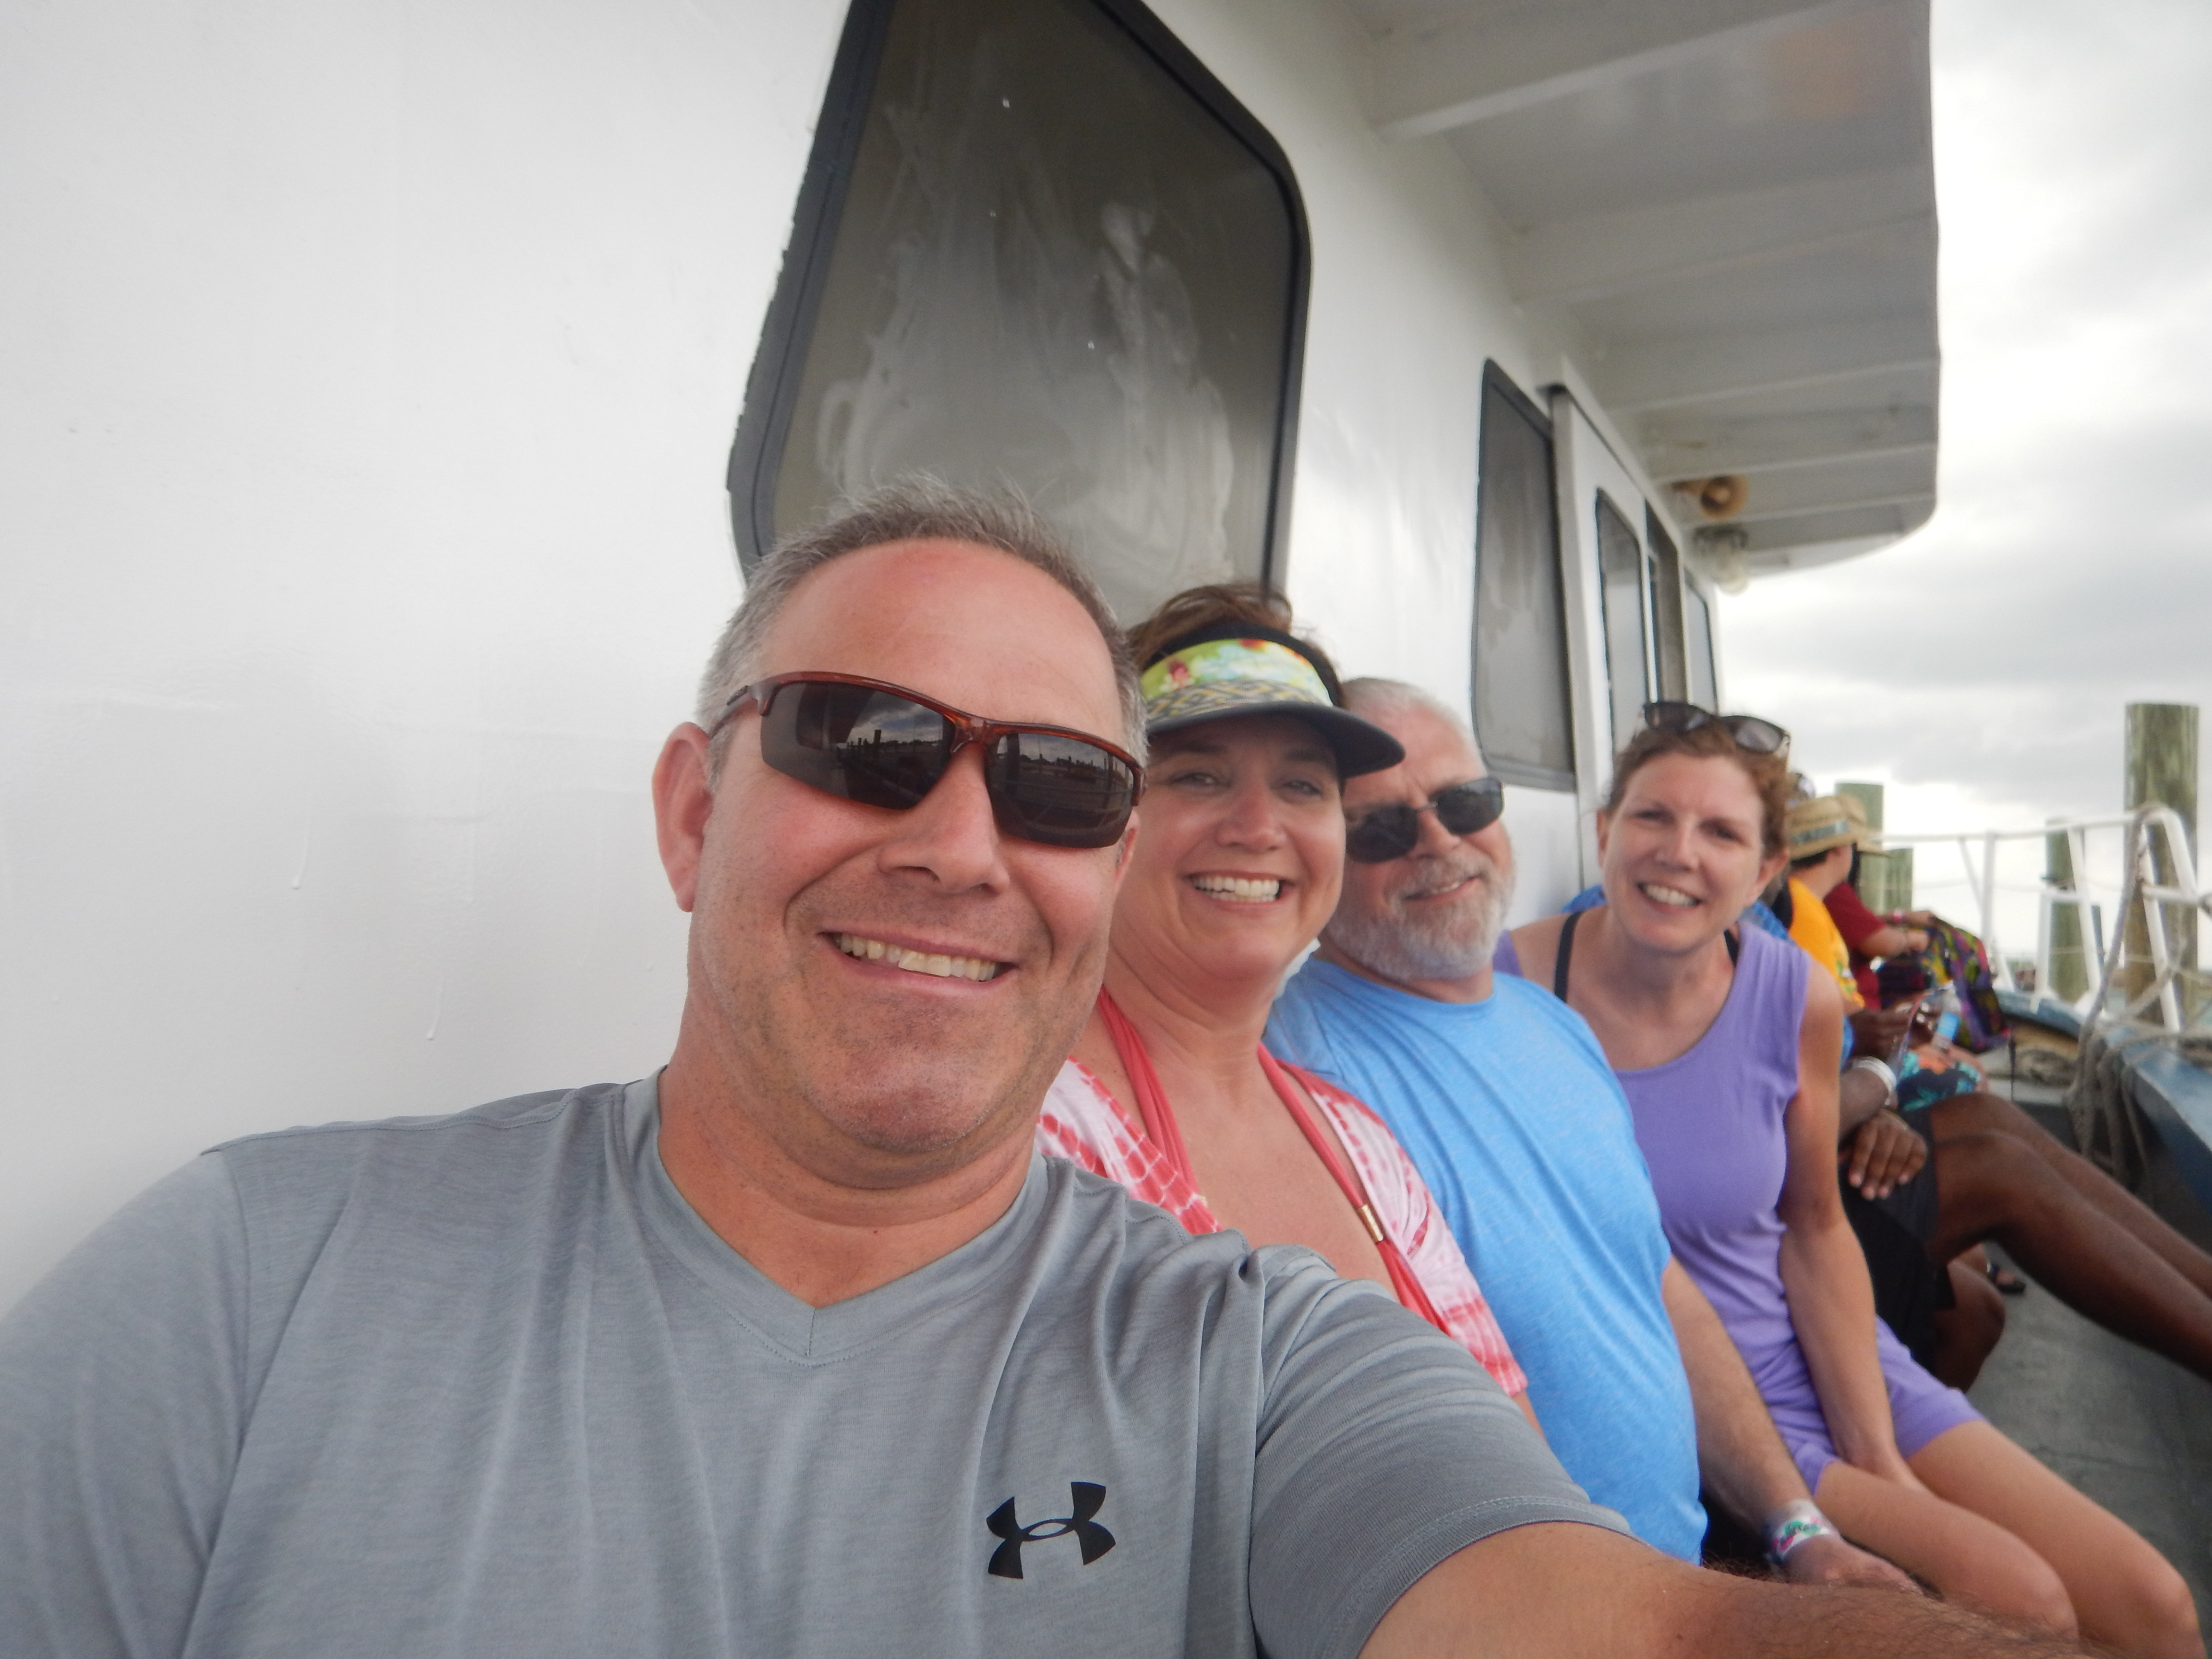 Escape to sunshine on a Bahama Cruise Adventure